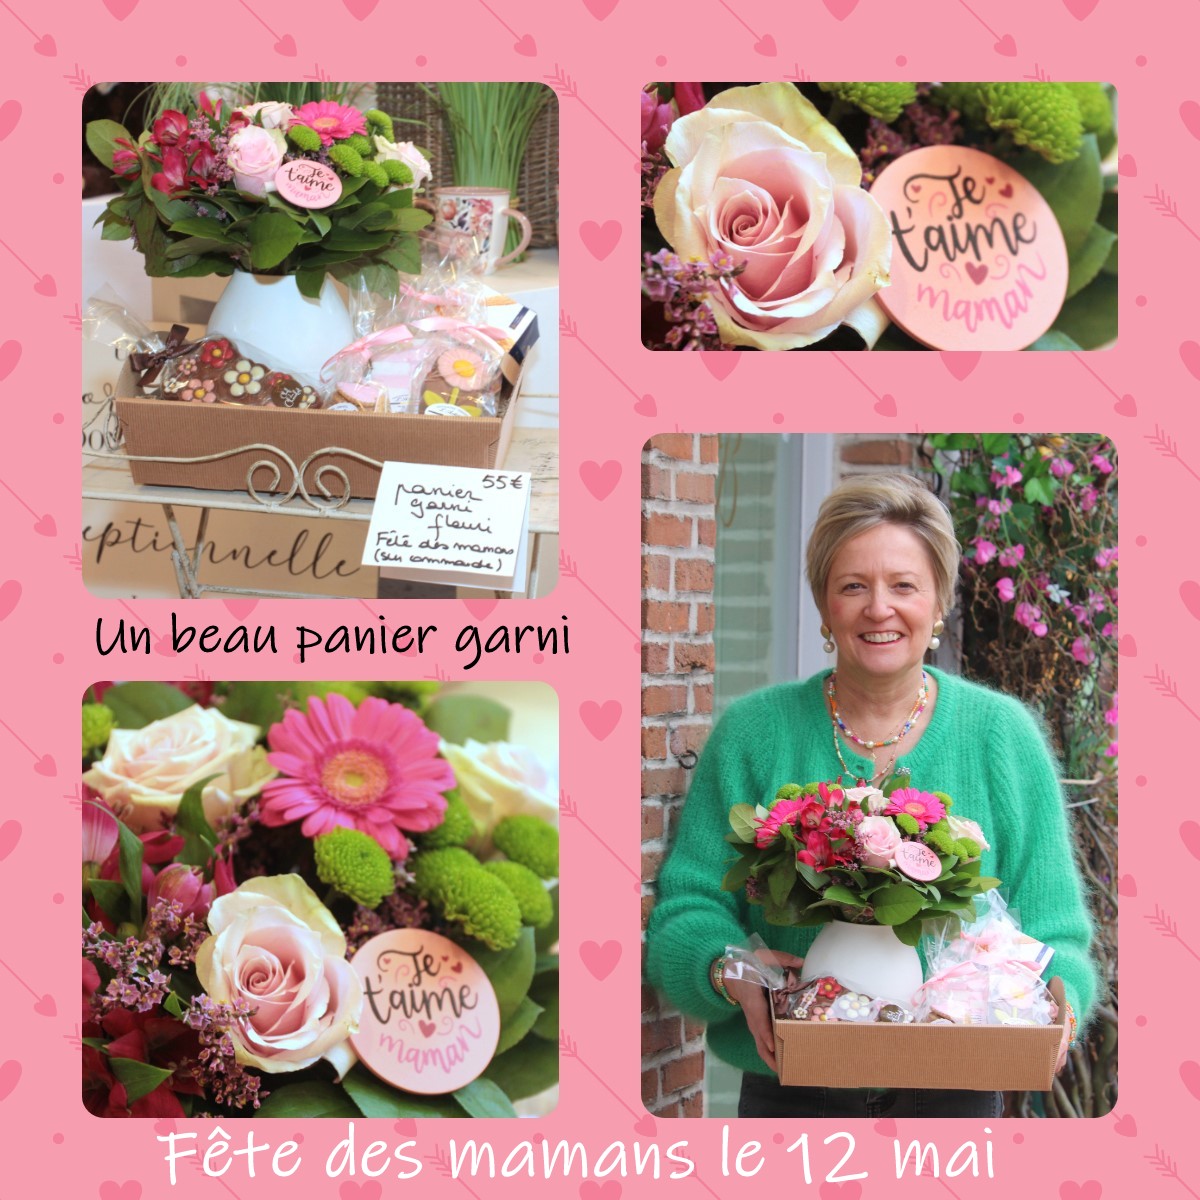 Pensez à réserver votre magnifique panier garni pour la fête des mamans belges(12 mai)